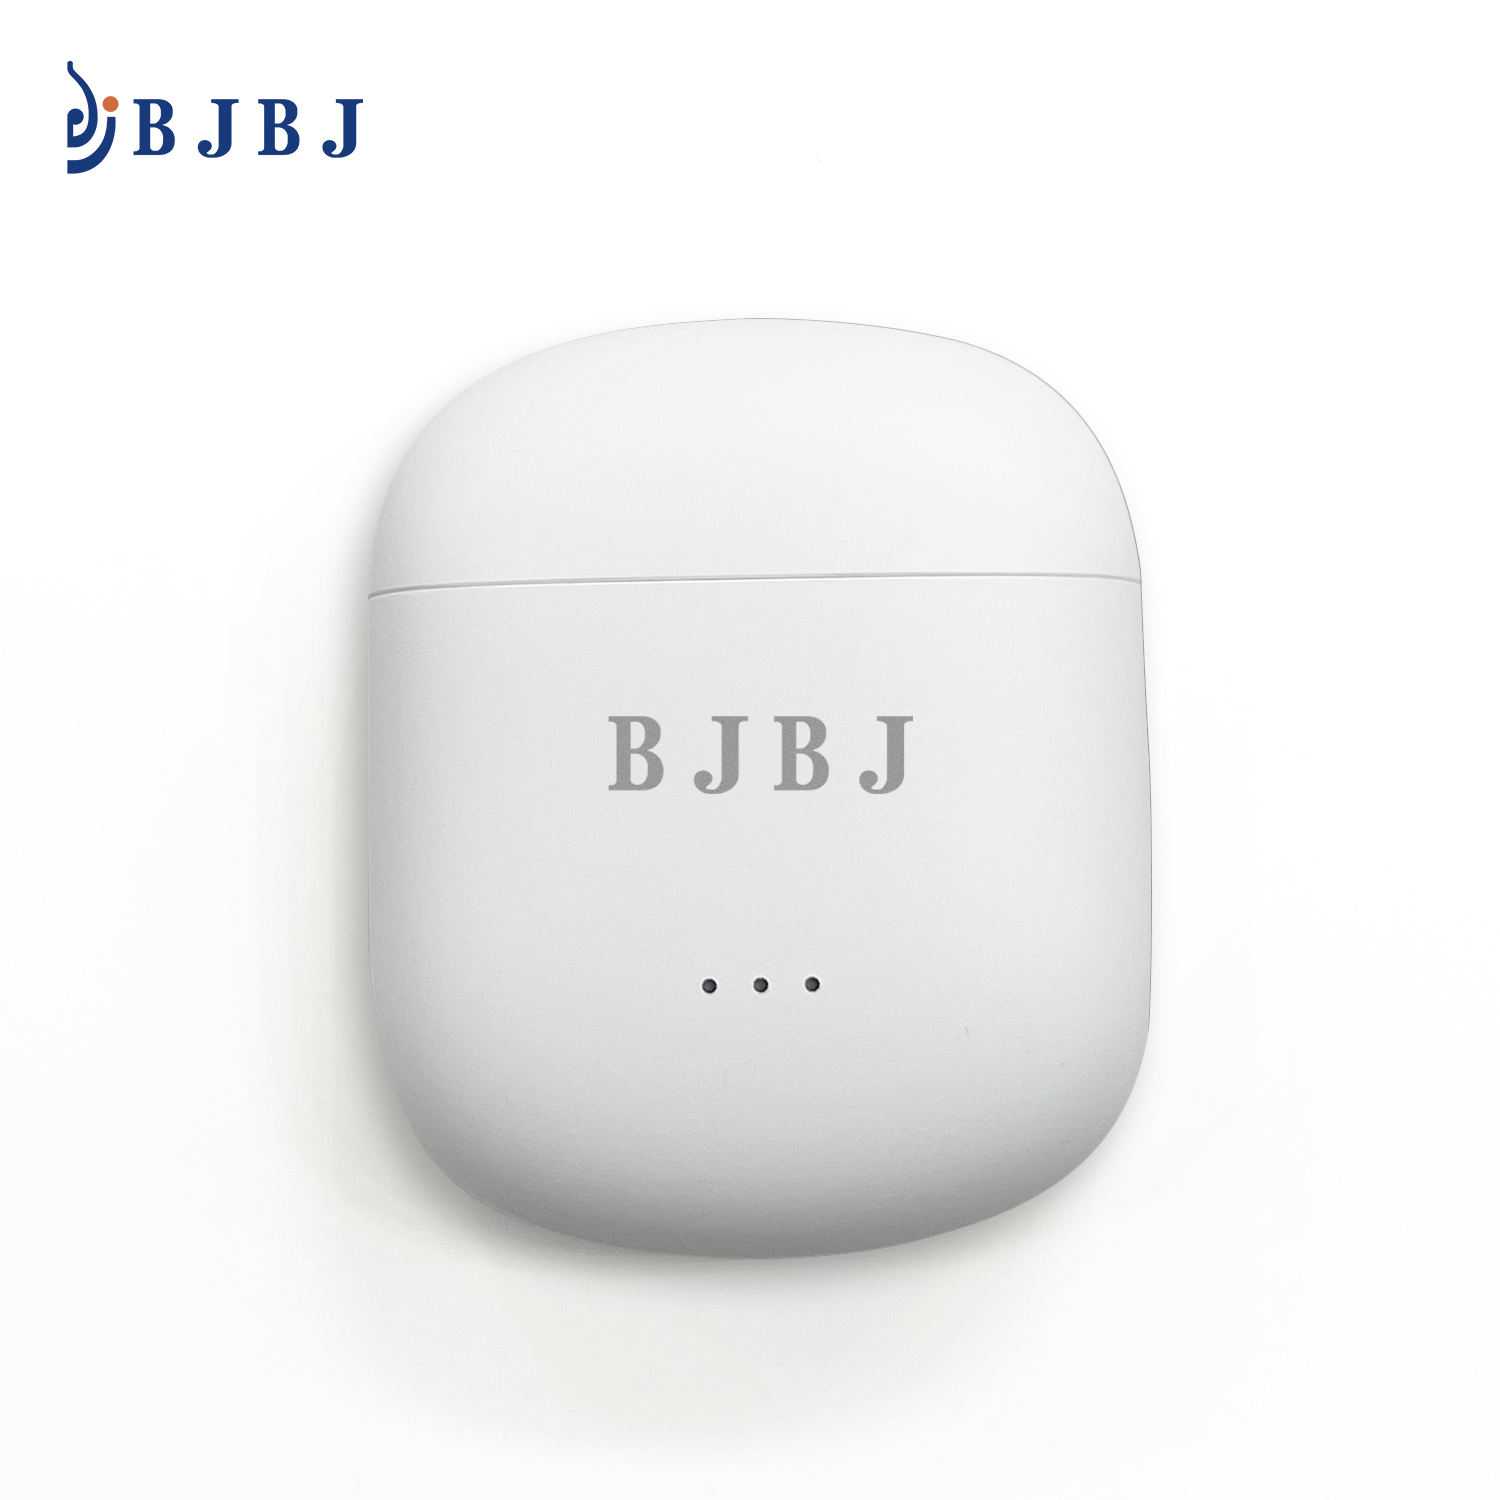 BJBJ earbuds manufacturer